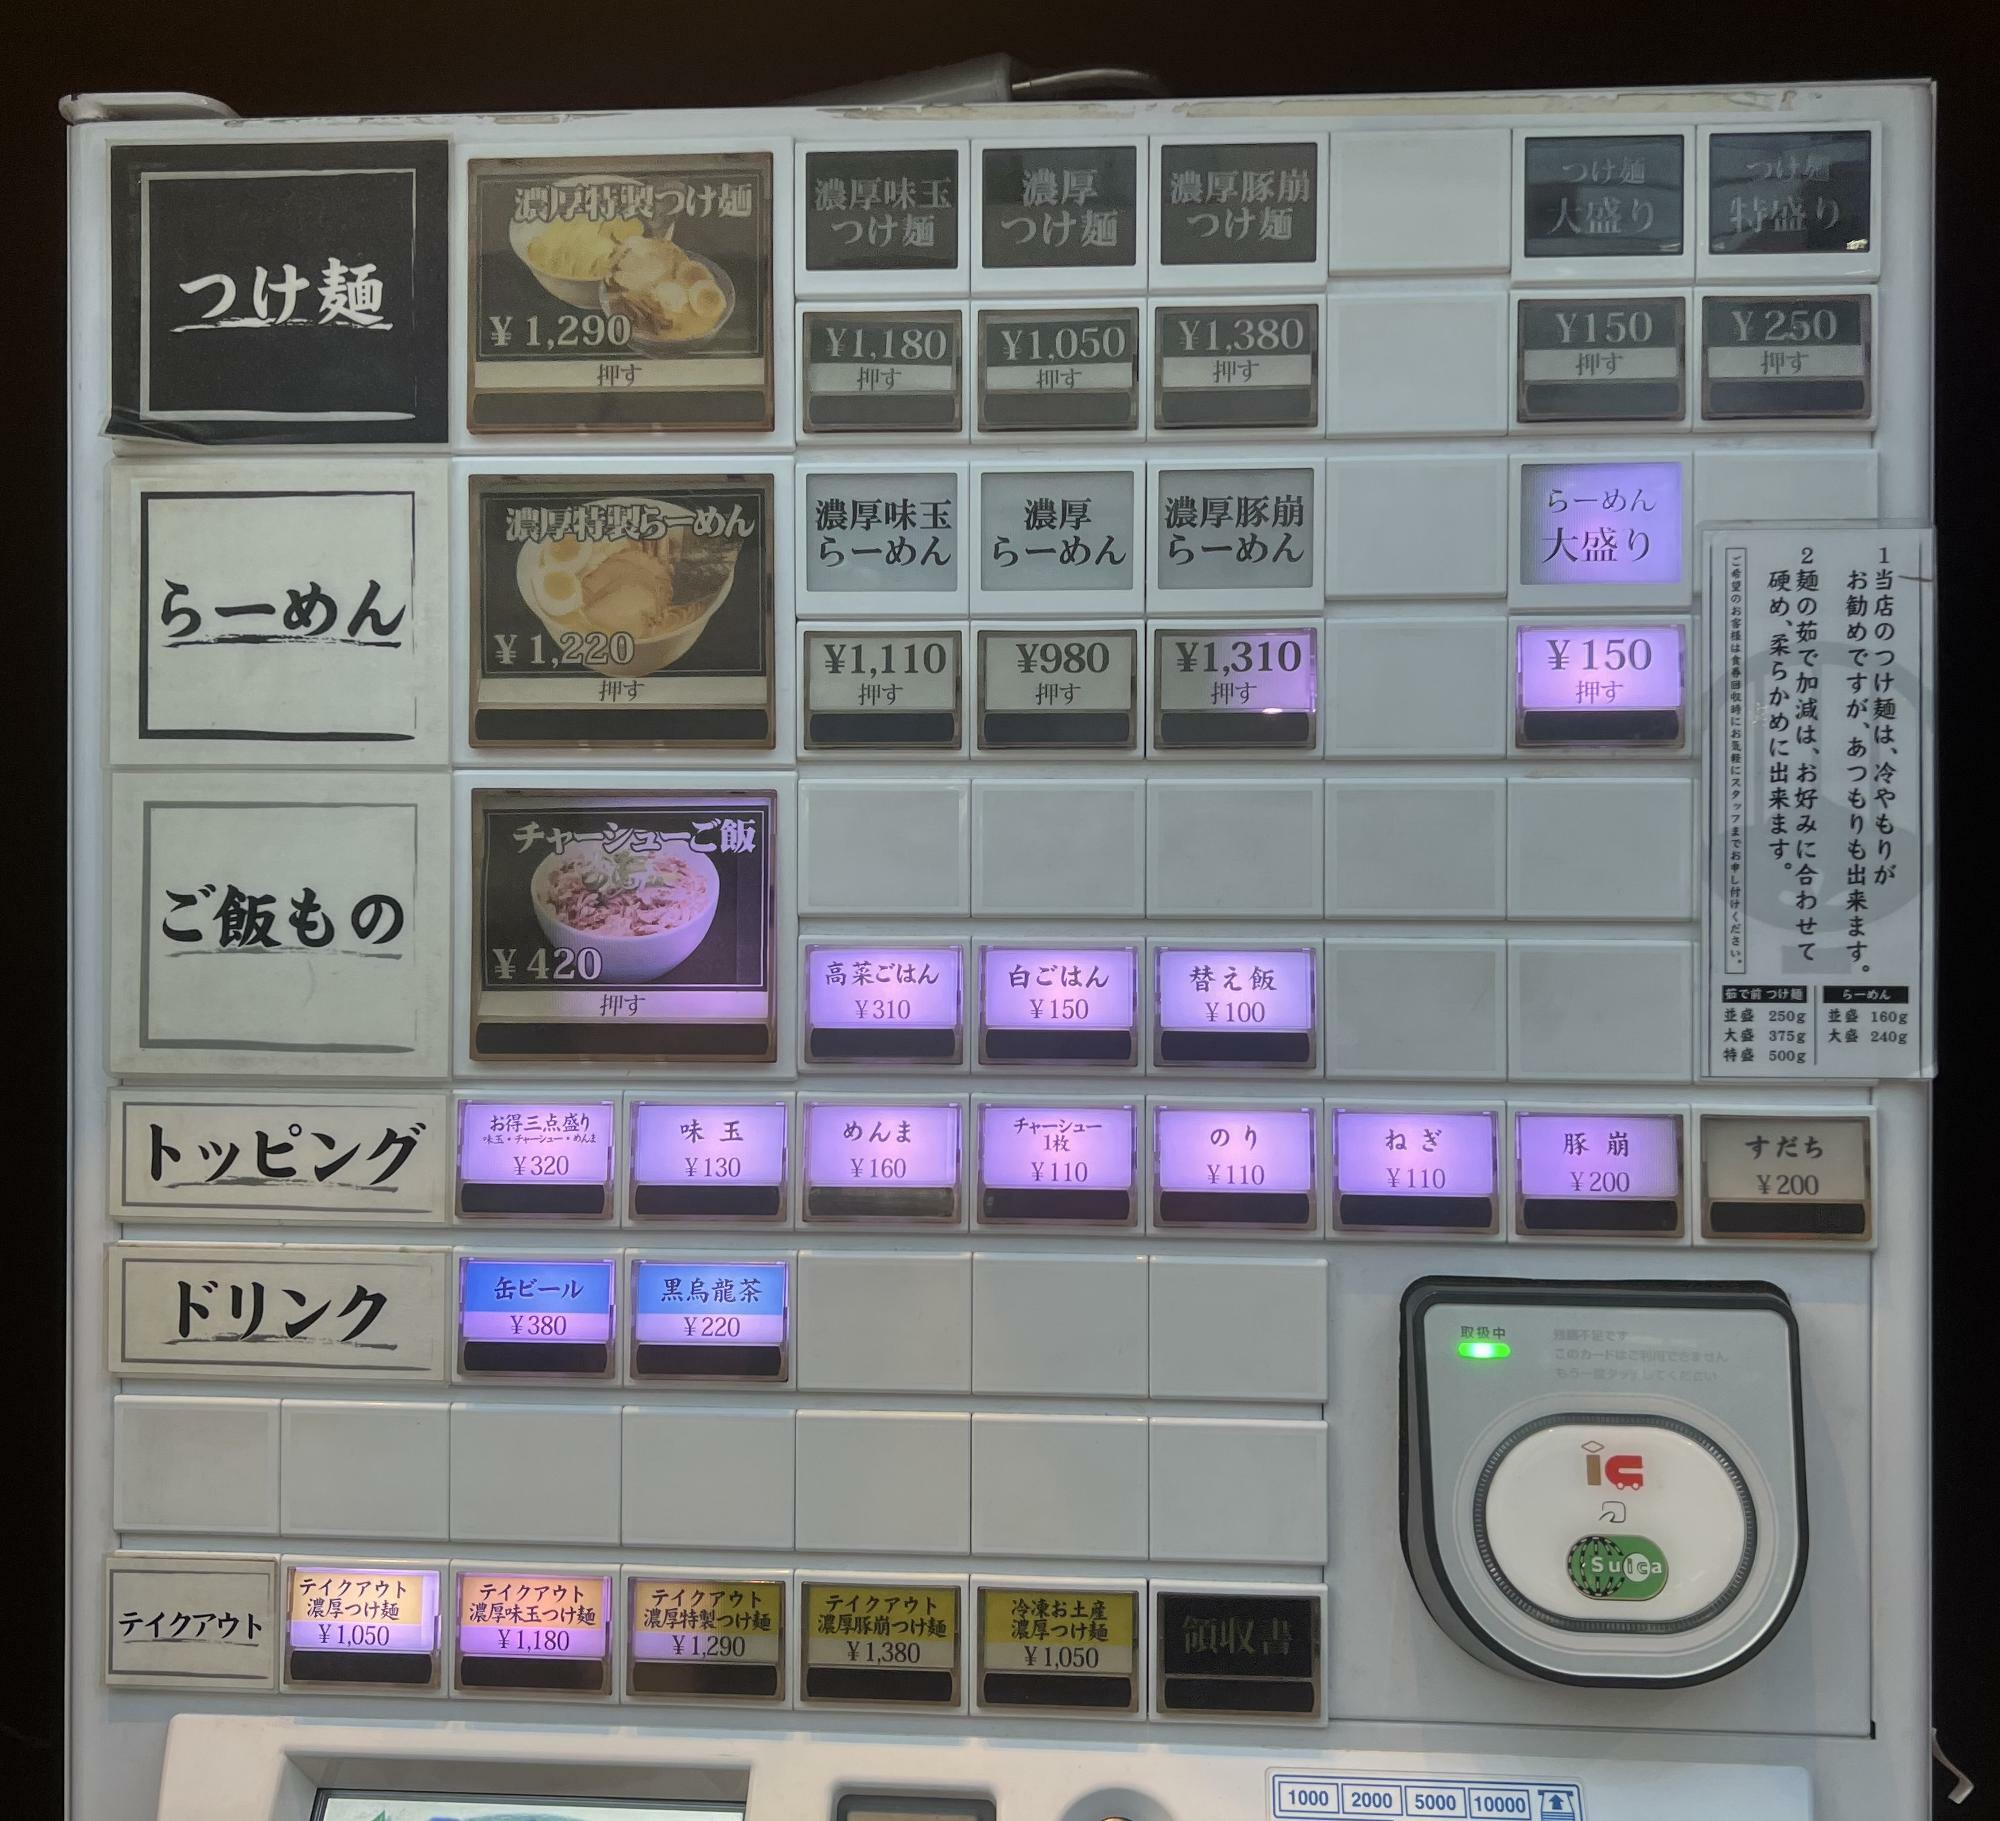 味玉が現在は20円値上げしてありSUICAも対応しておりました。